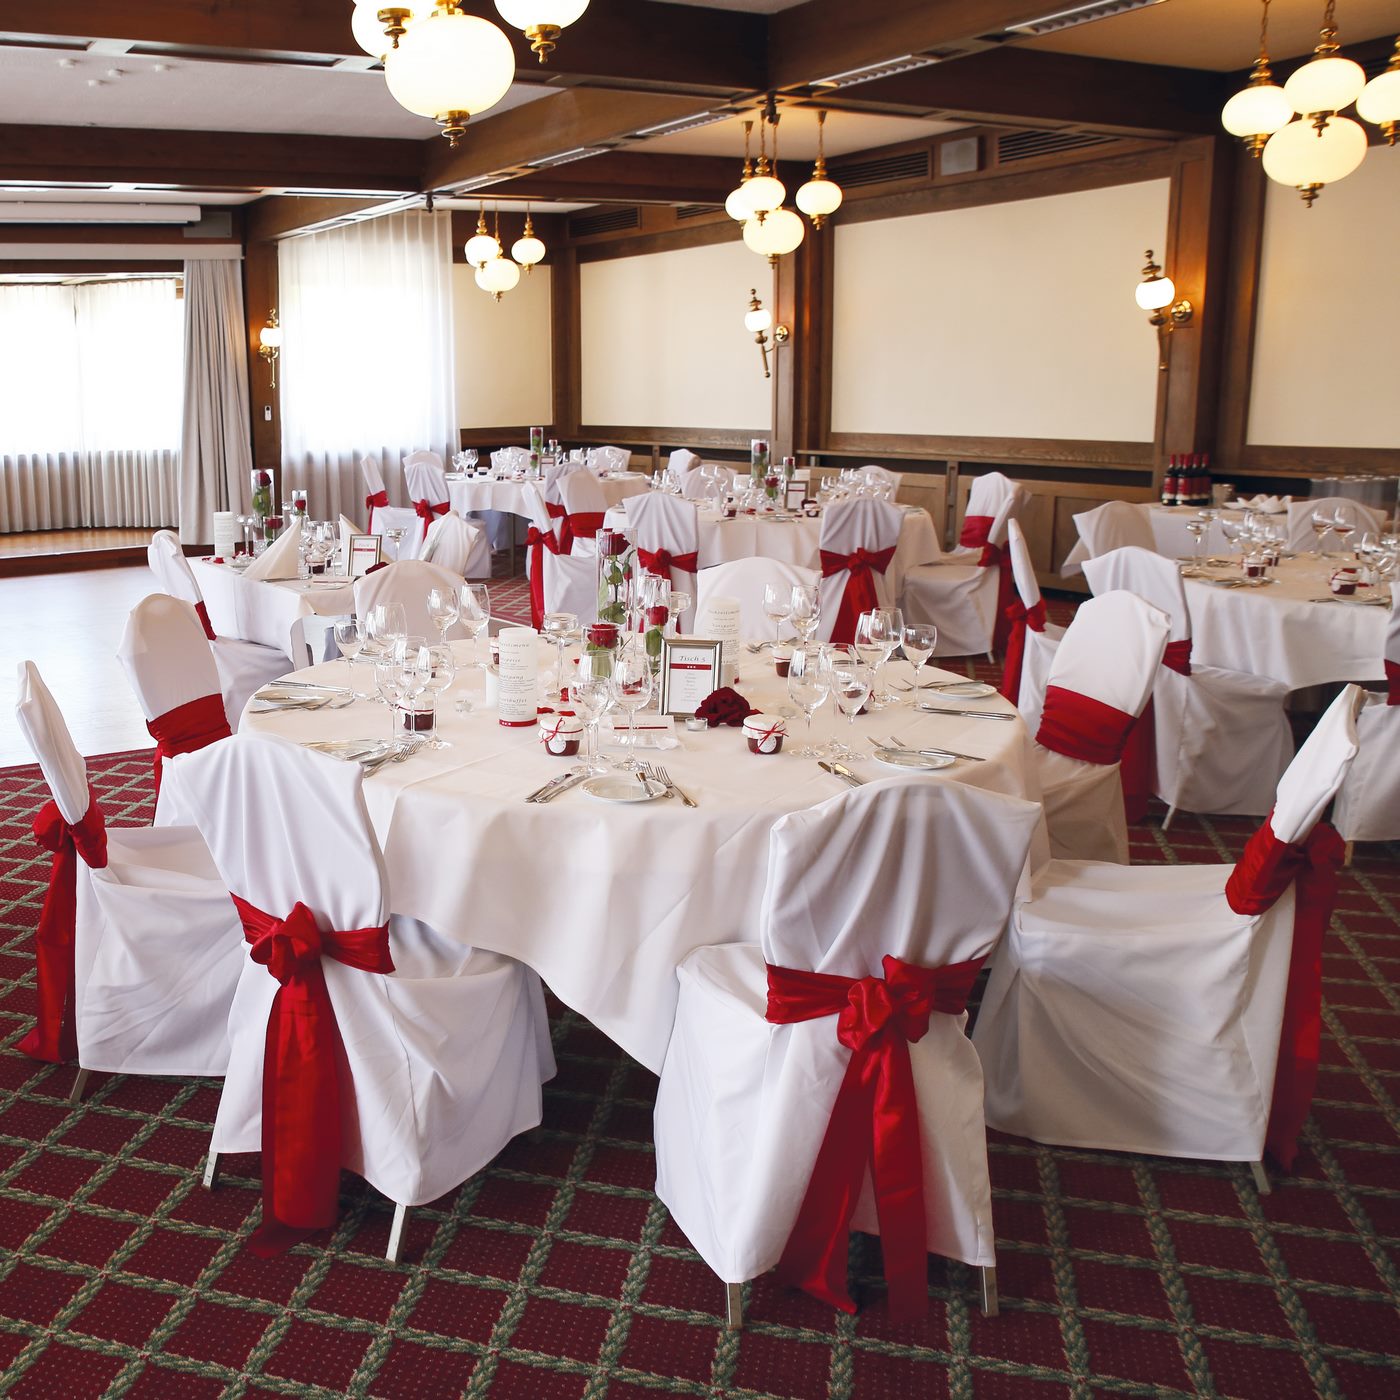 Hochzeitsdekoration in Rot mit rotem Teppich